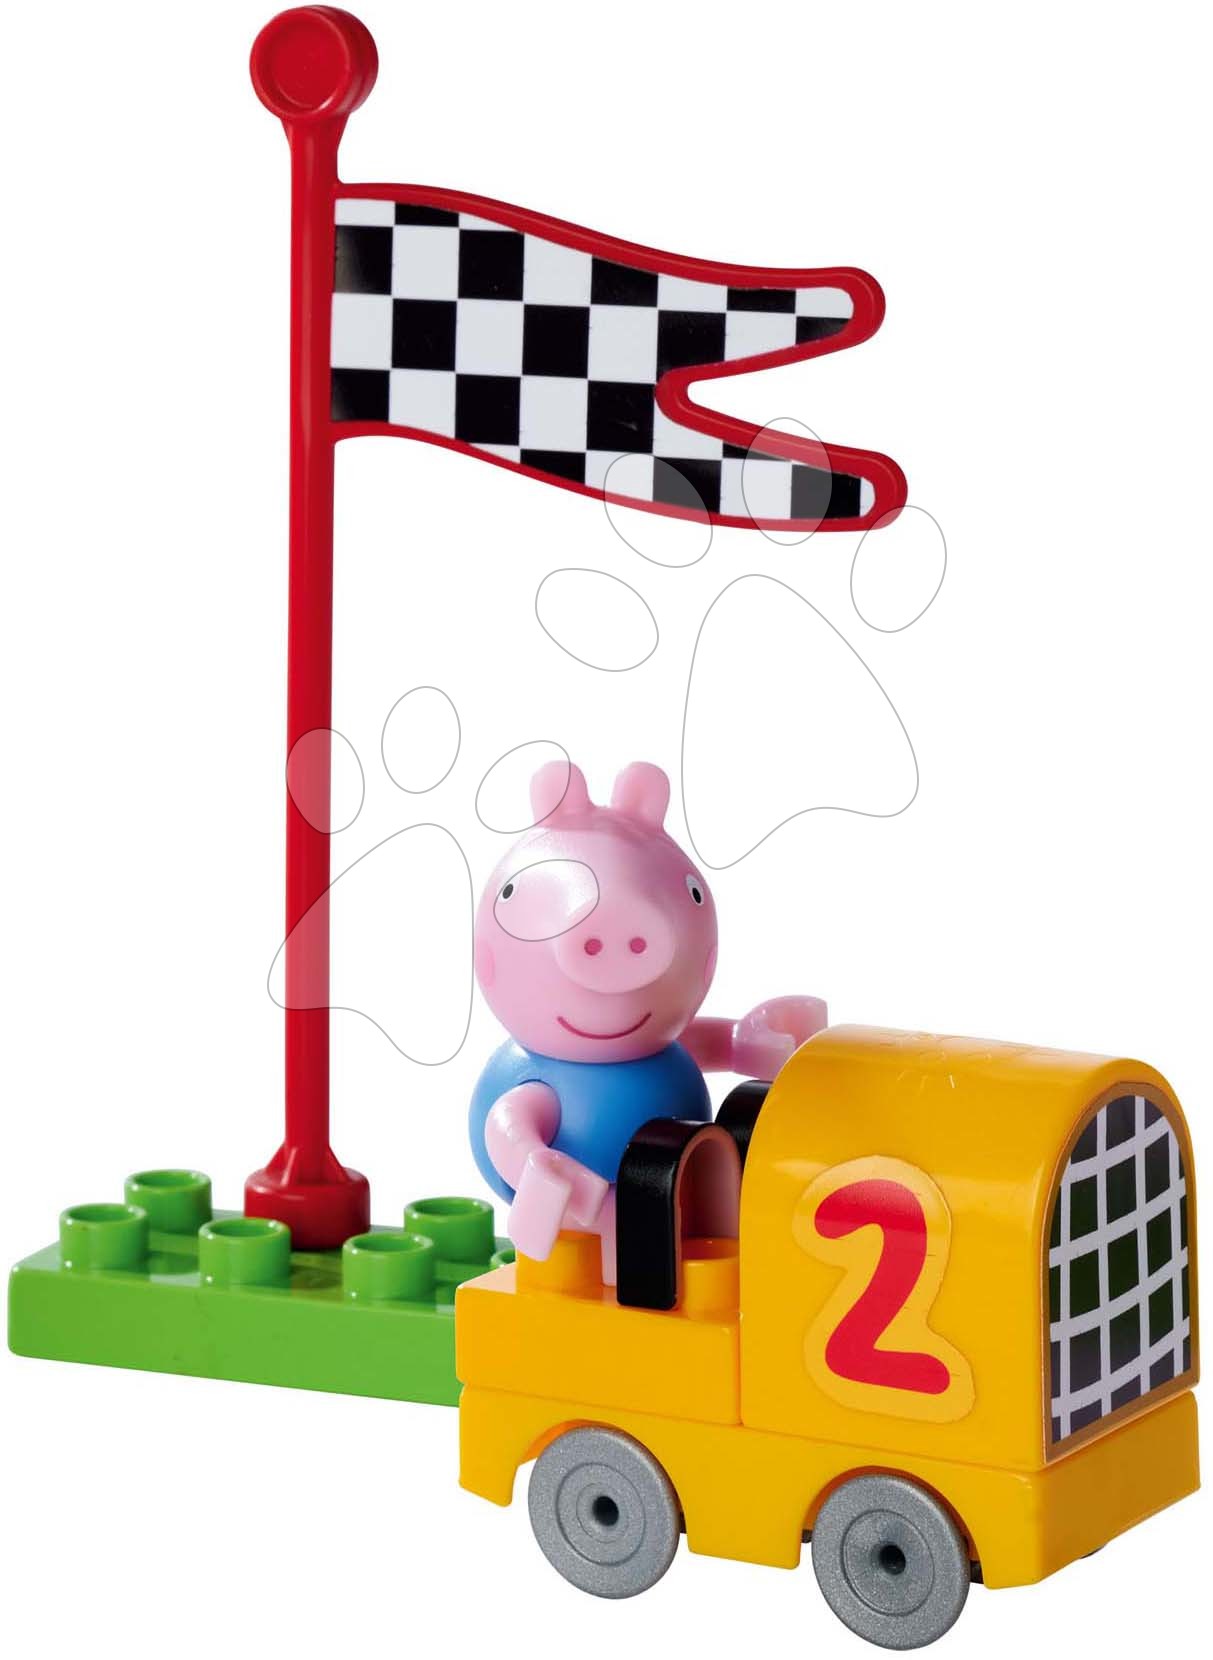 Stavebnica Peppa Pig Starter Set PlayBig Bloxx BIG s figúrkou - s autíčkom od 1,5-5 rokov